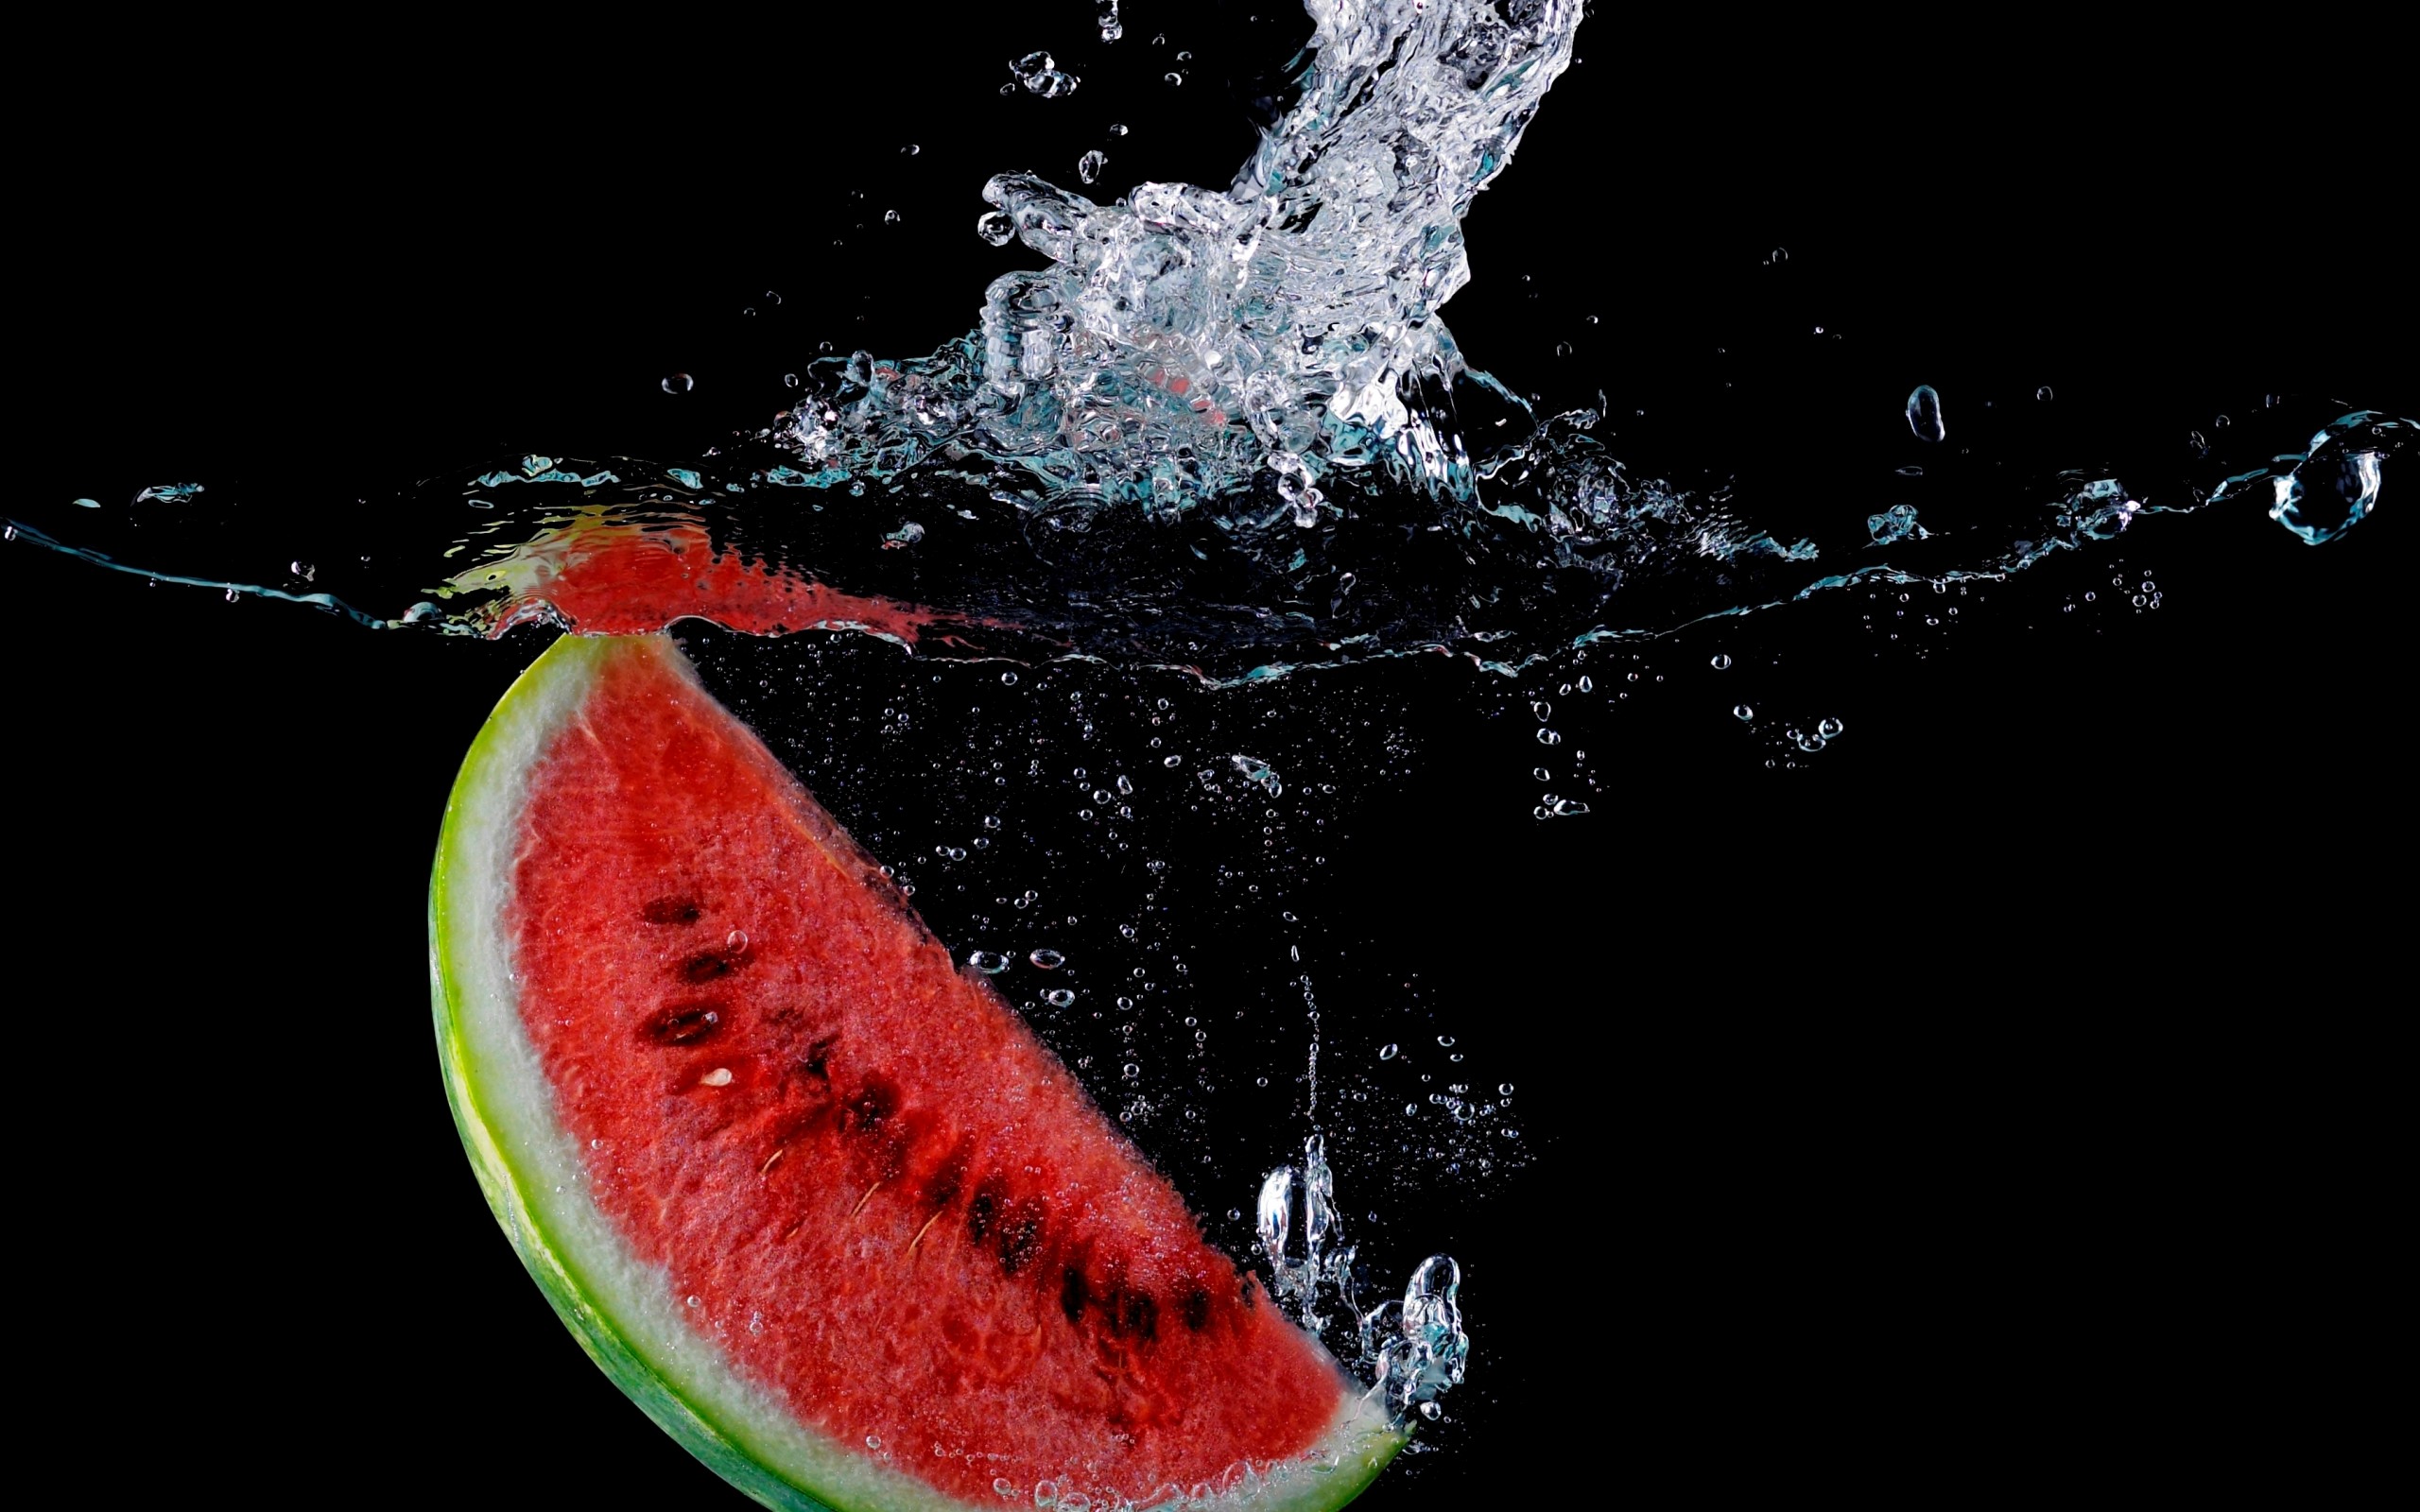 Download 2560x1440 Summer Watermelon Pattern Wallpaper  Wallpaperscom